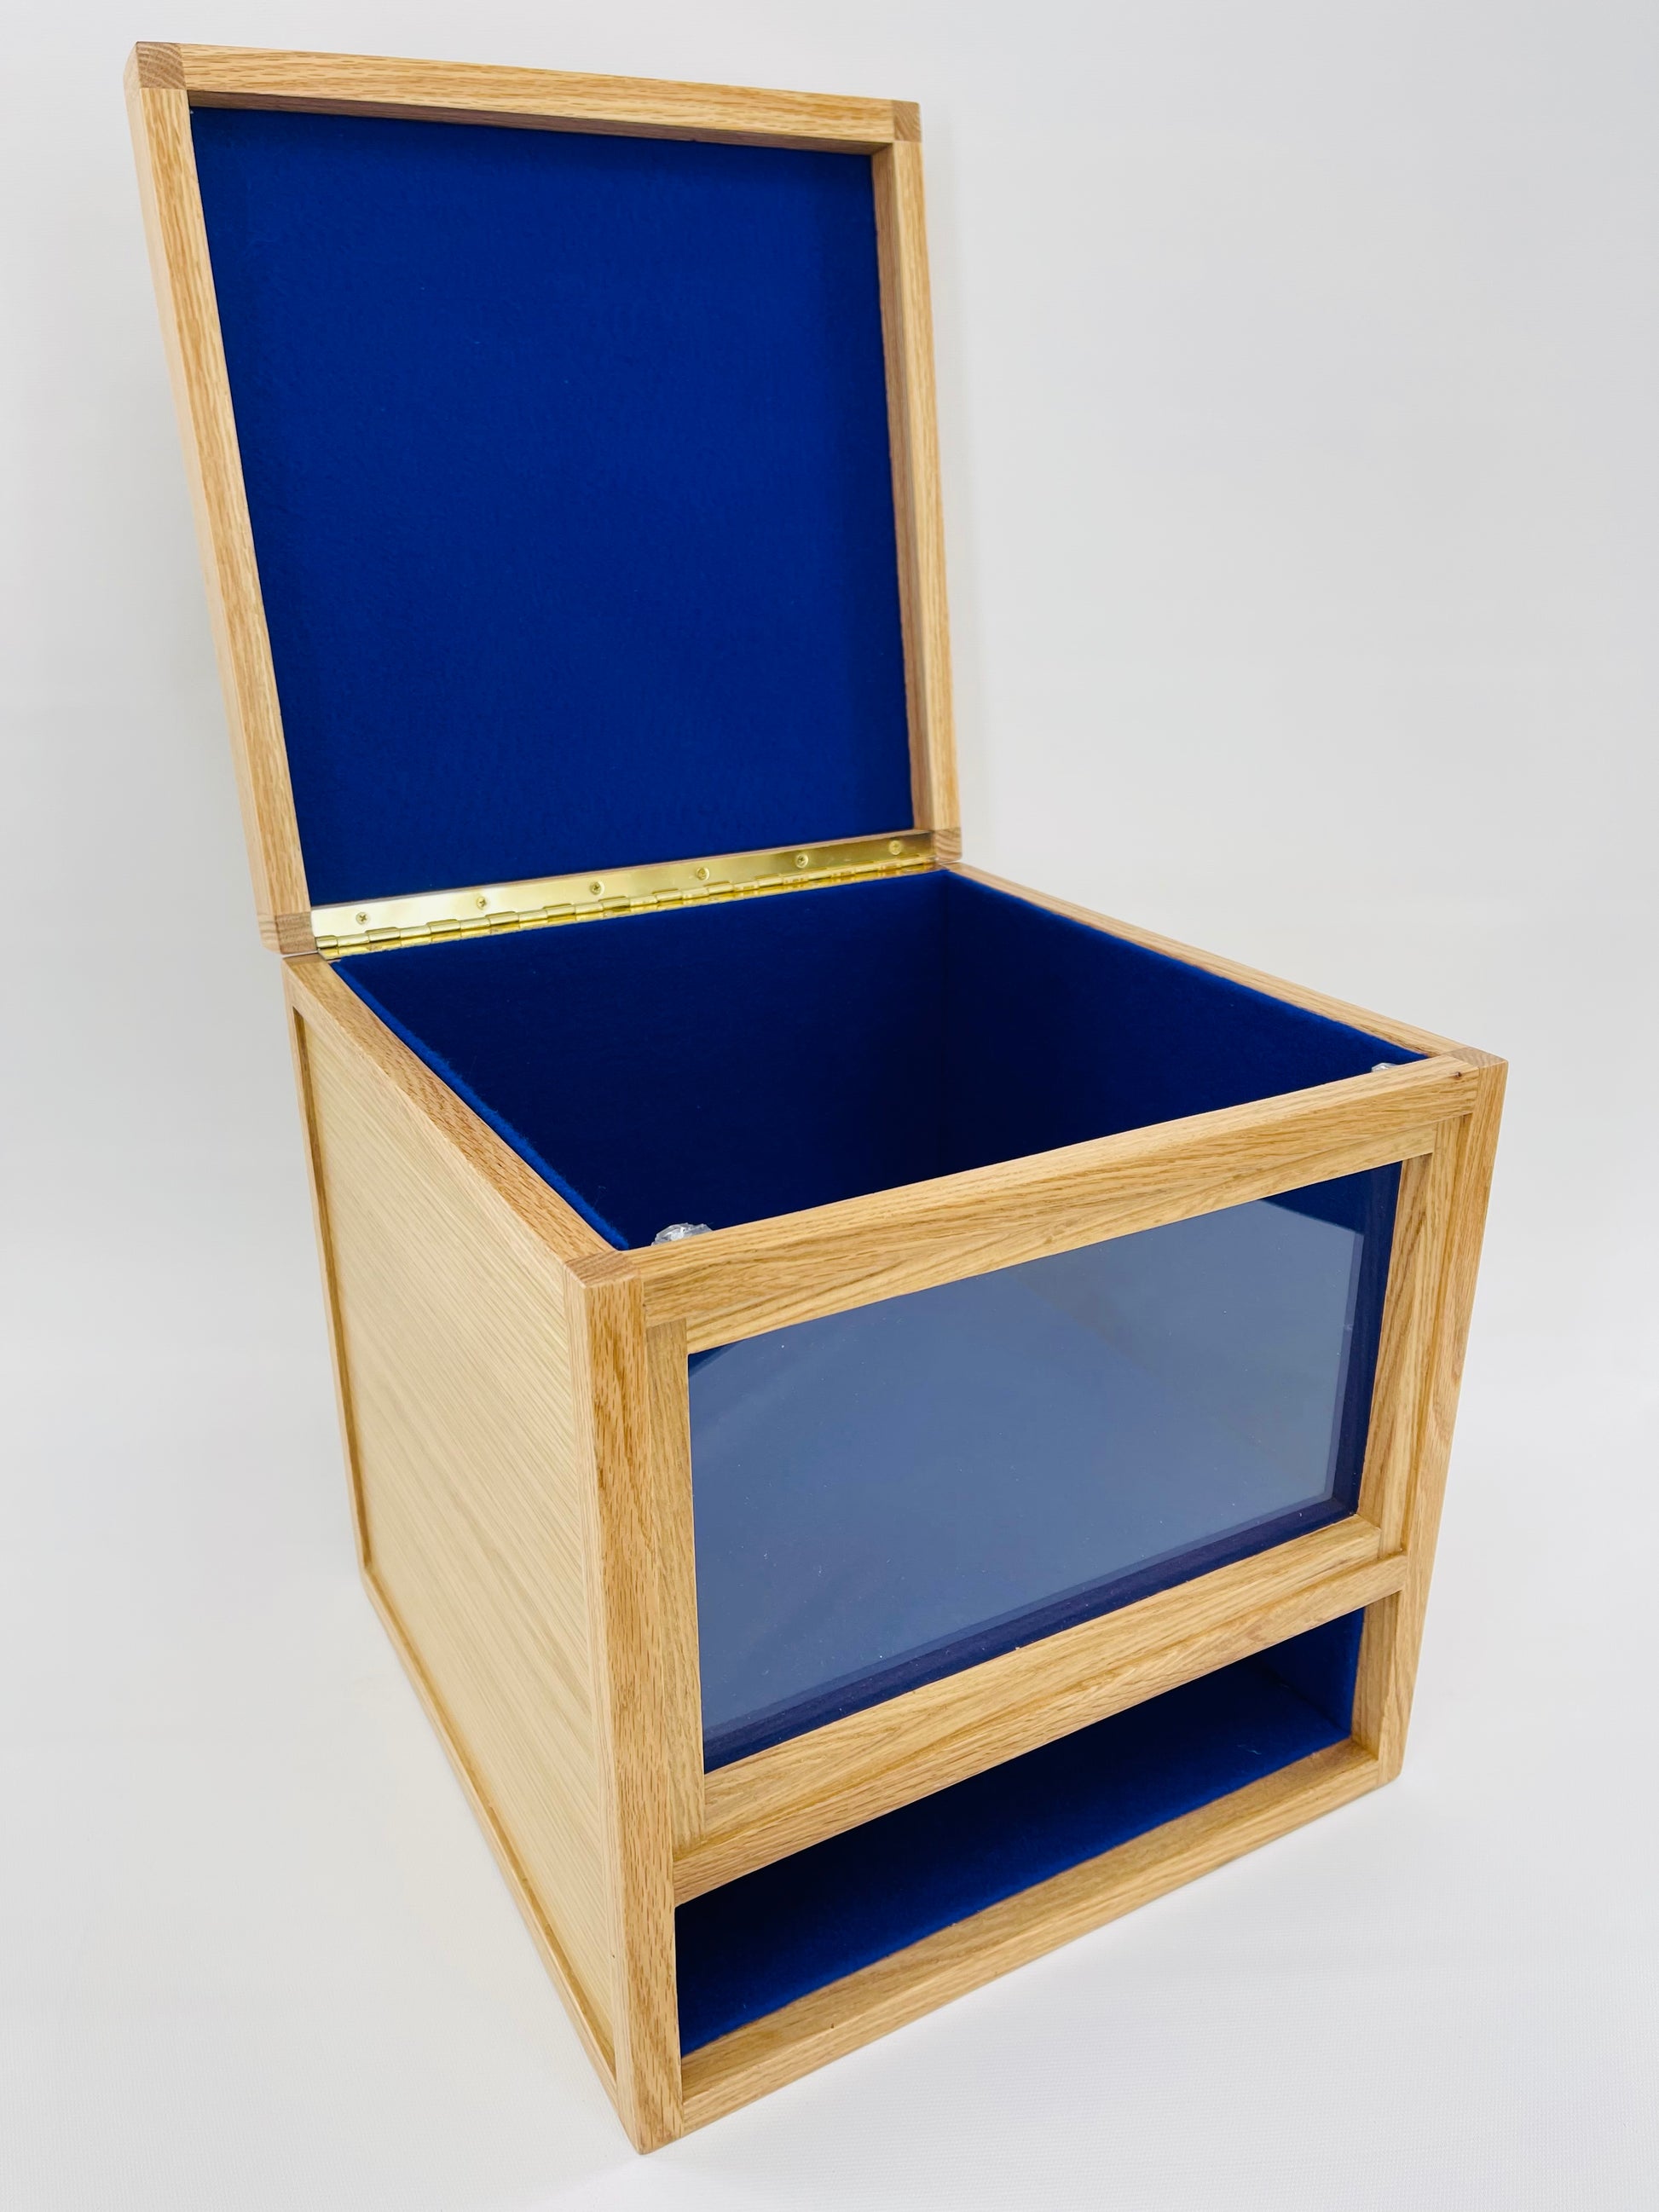 USCG Hat Box Kit (Base price shown)